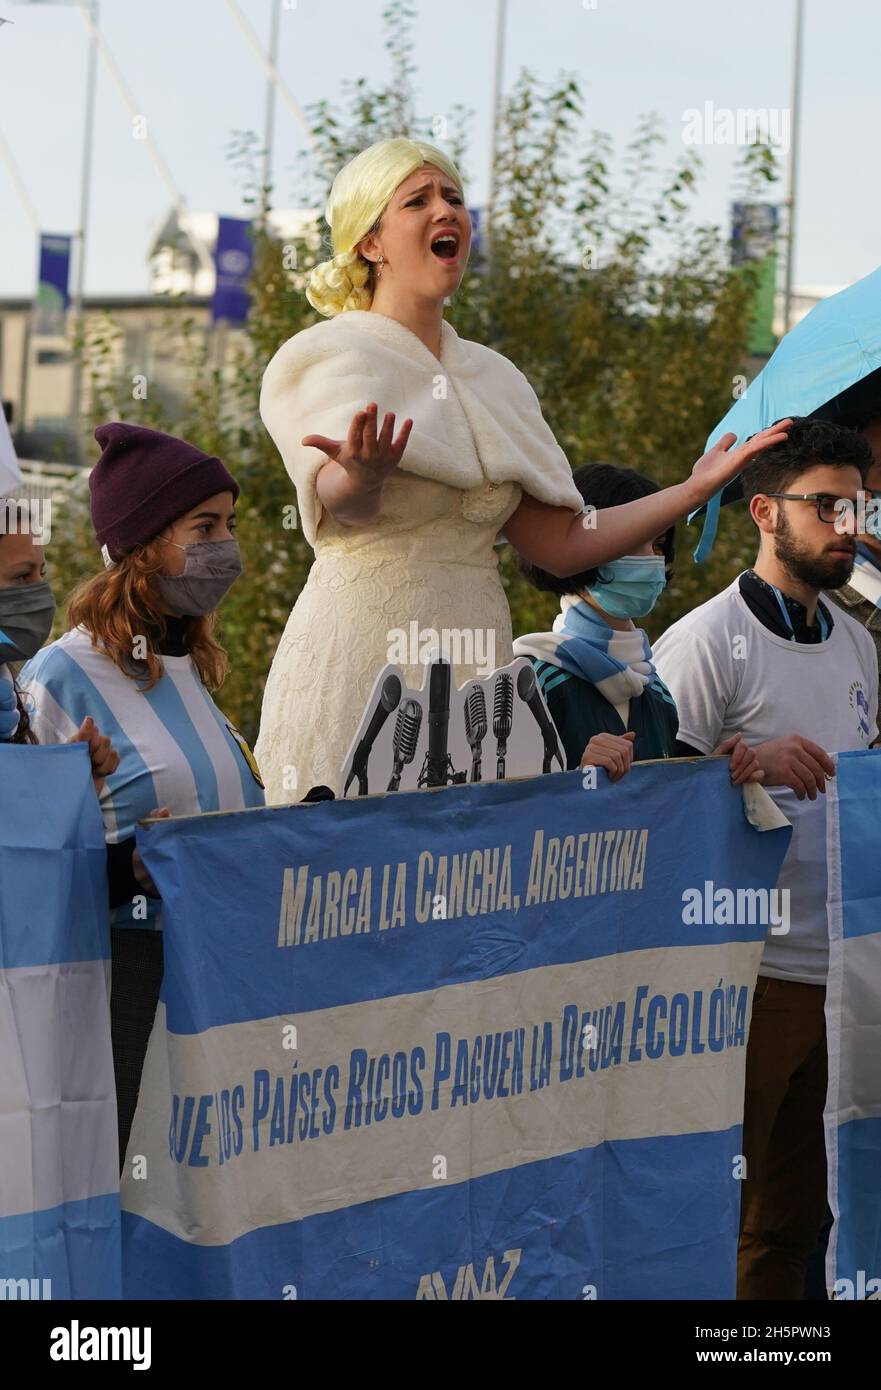 Eine Opernsängerin (Mitte), die Don't Cry for Me Argentina singt, nimmt an einem argentinischen Protest vor dem Cop26-Gipfel in Glasgow Teil. Bilddatum: Donnerstag, 11. November 2021. Stockfoto